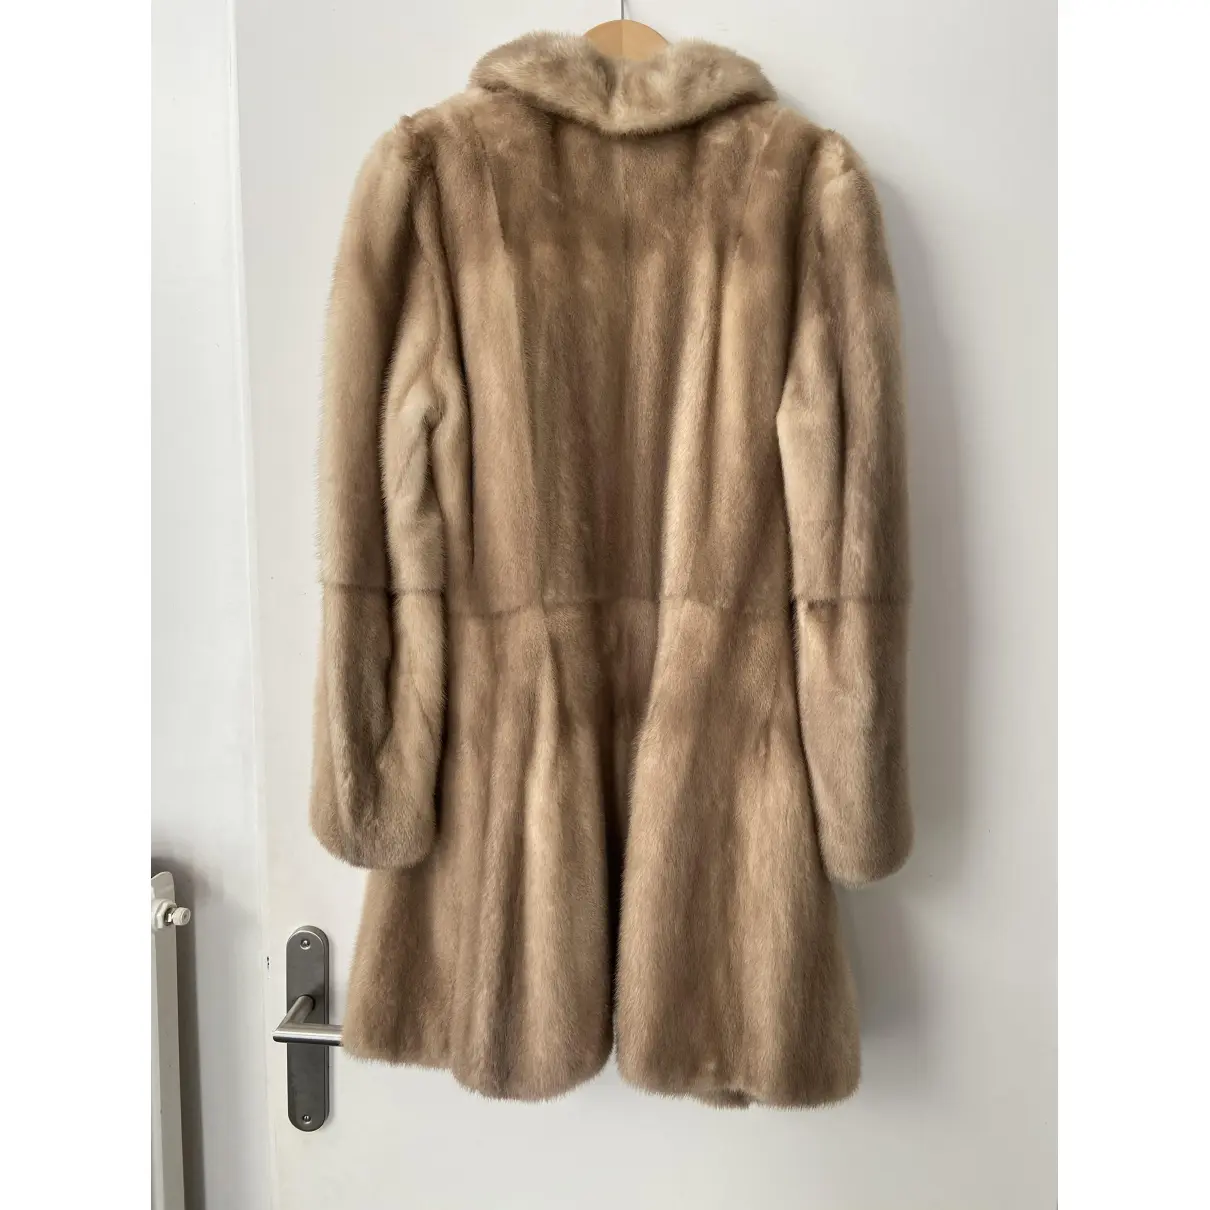 Buy Daniel Benjamin Mink coat online